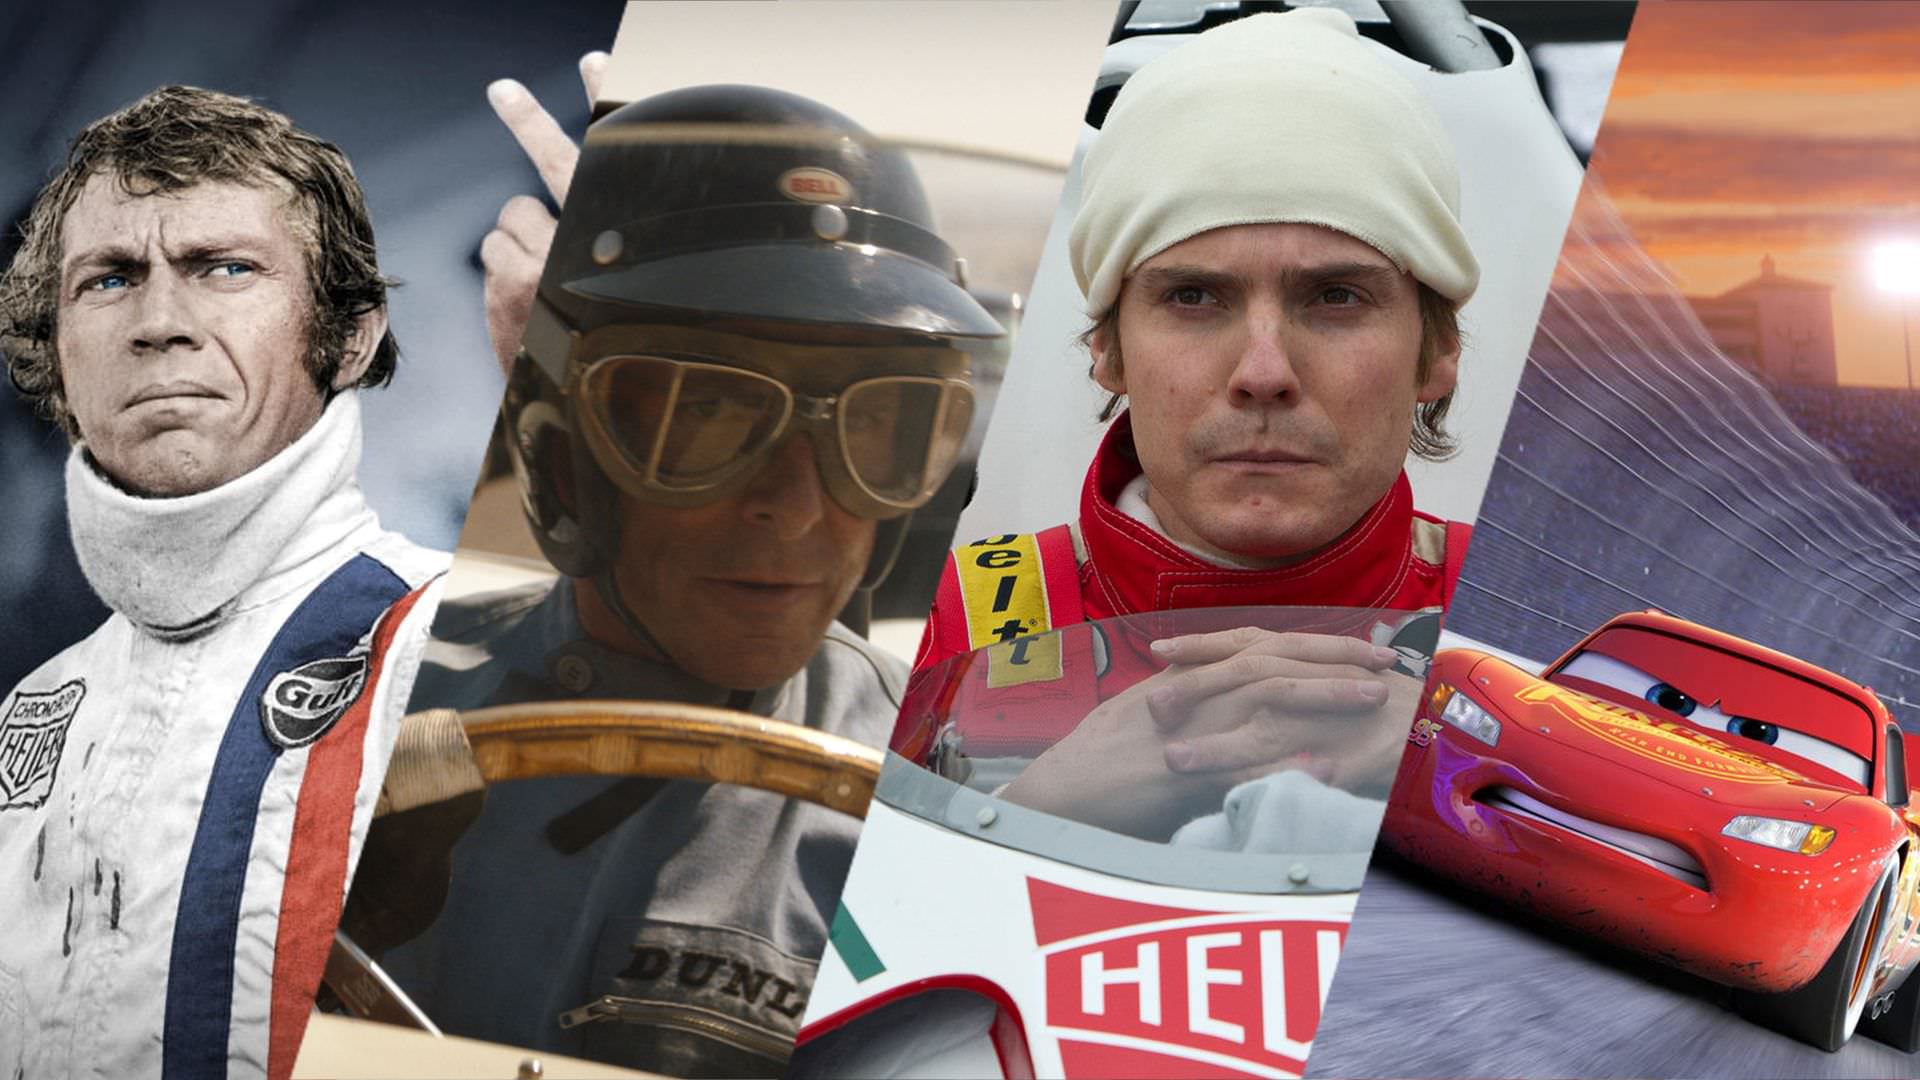 ۲۰ فیلم با موضوع مسابقه اتومبیل رانی که باید ببینید